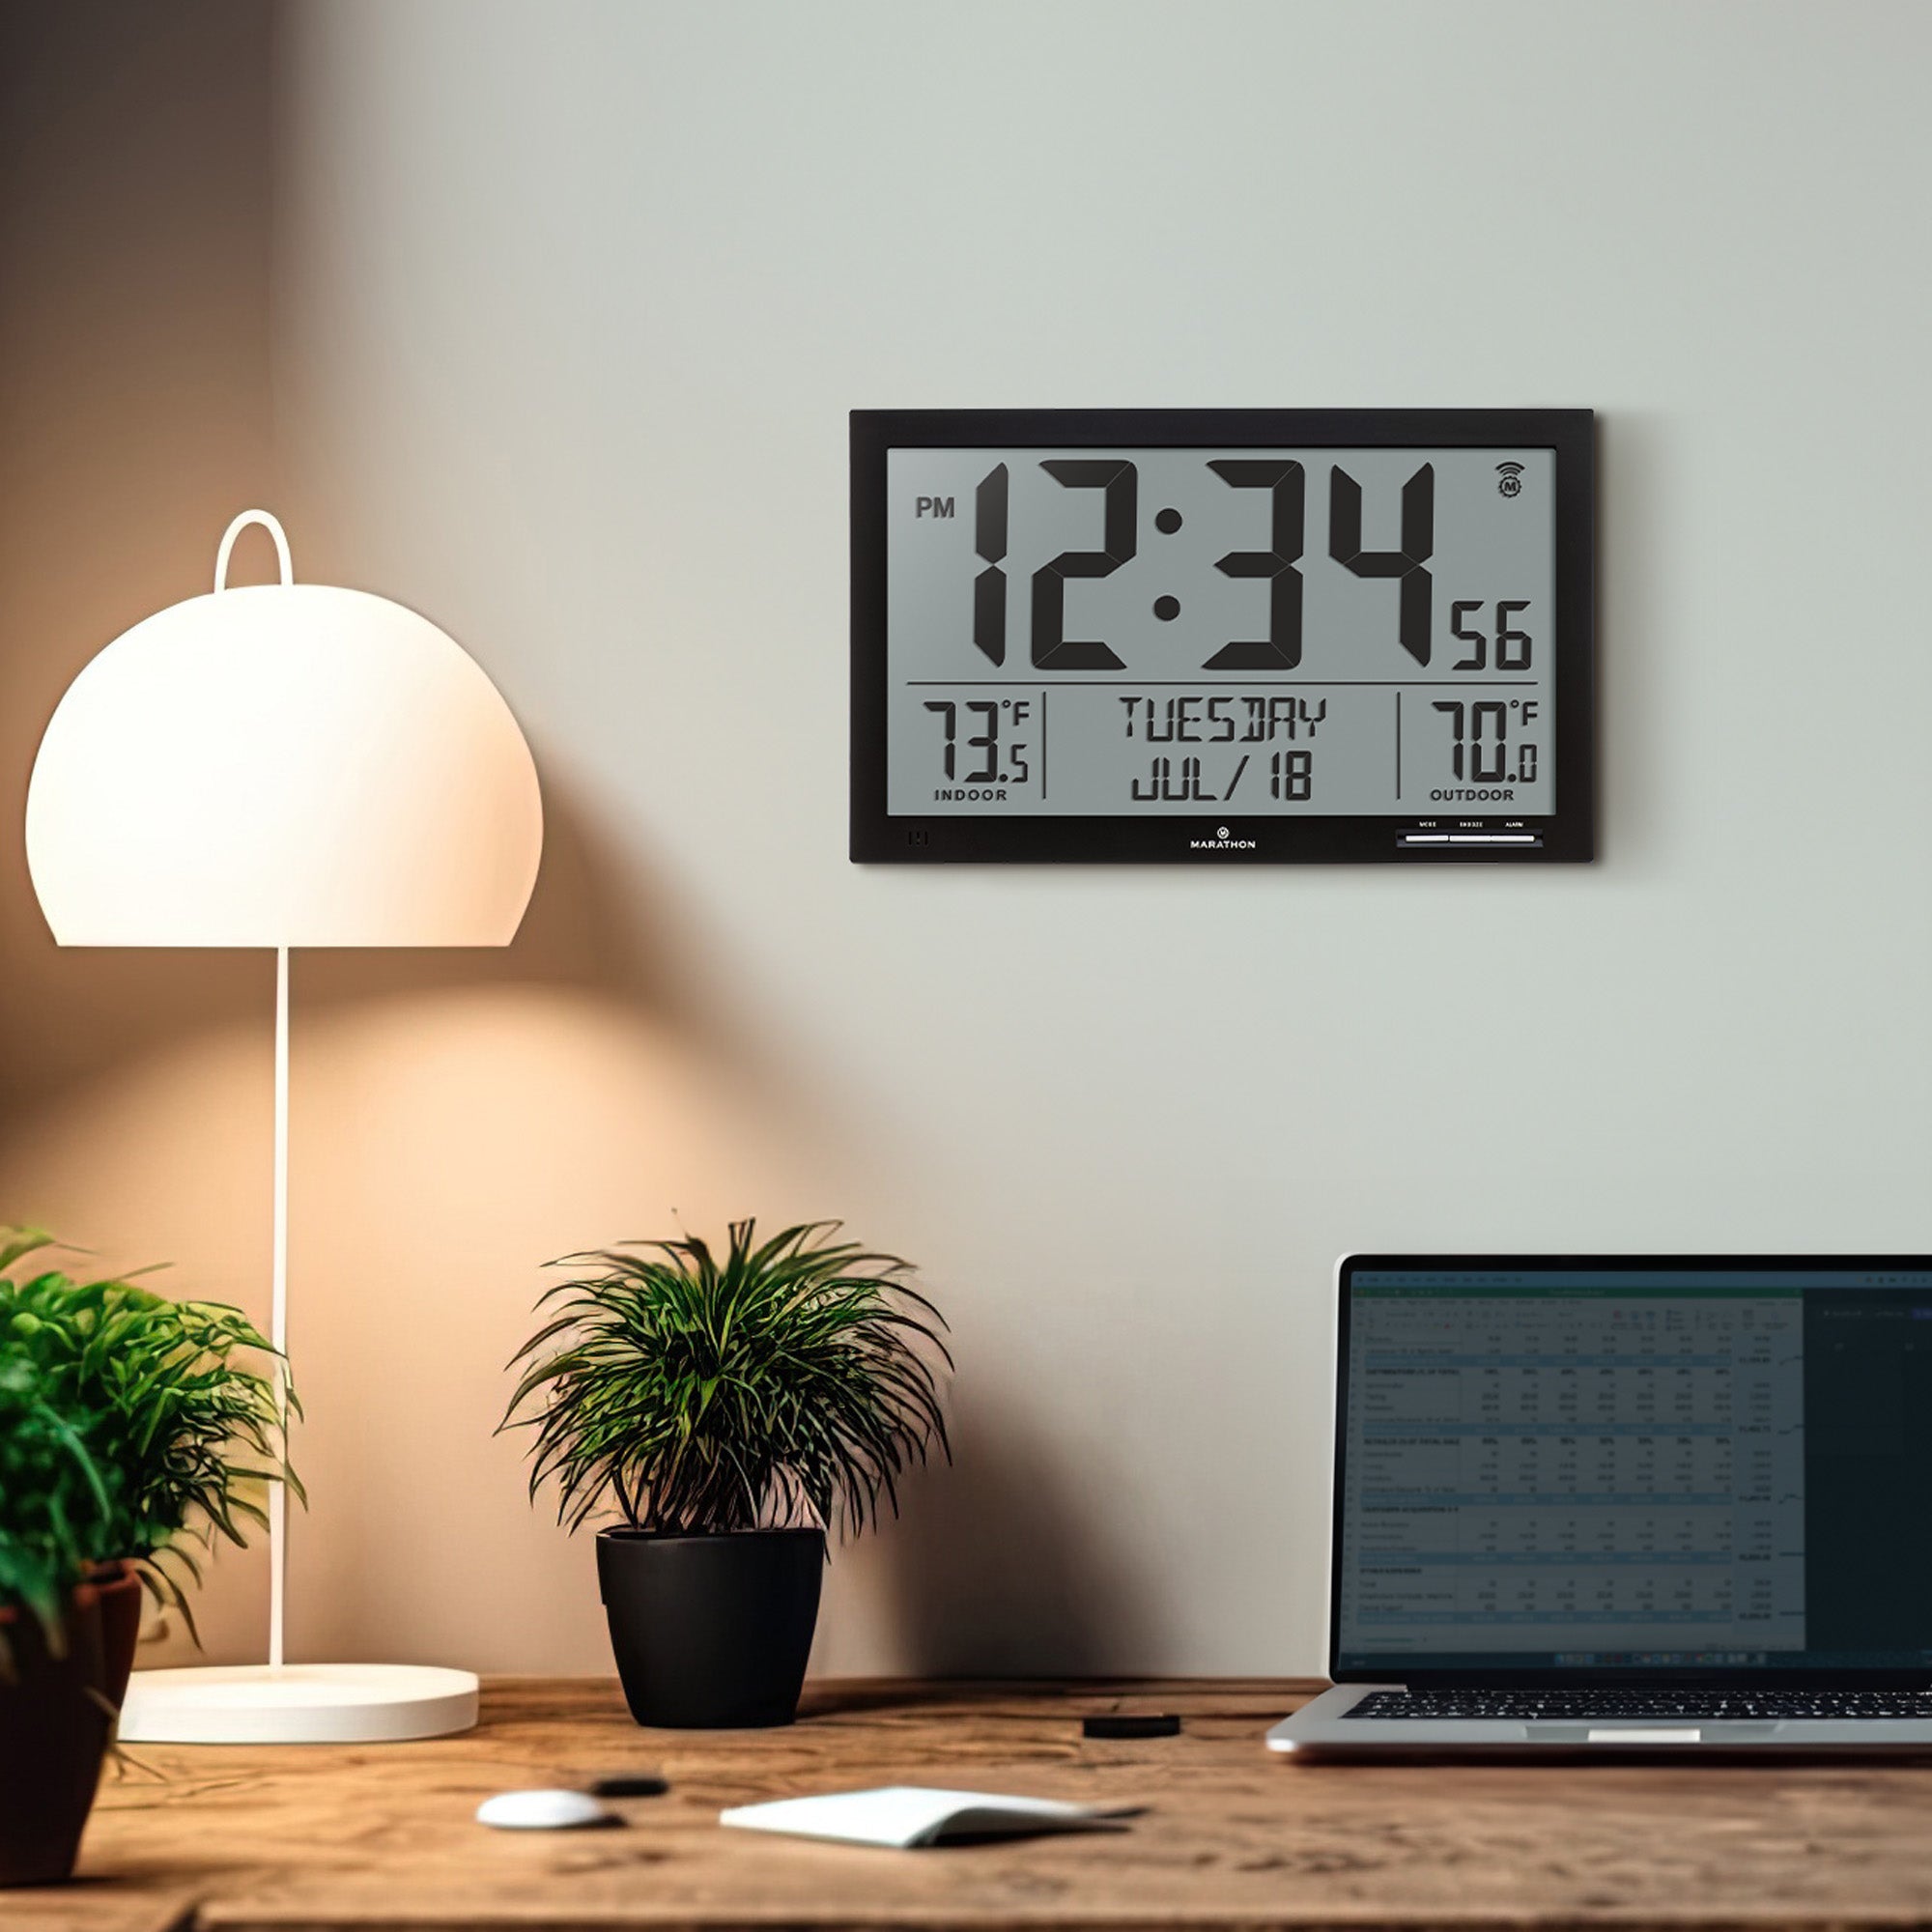 Reloj atómico de pantalla grande, reloj de pared digital con temperatura y  fecha para interiores y exteriores, sensor inalámbrico para exteriores